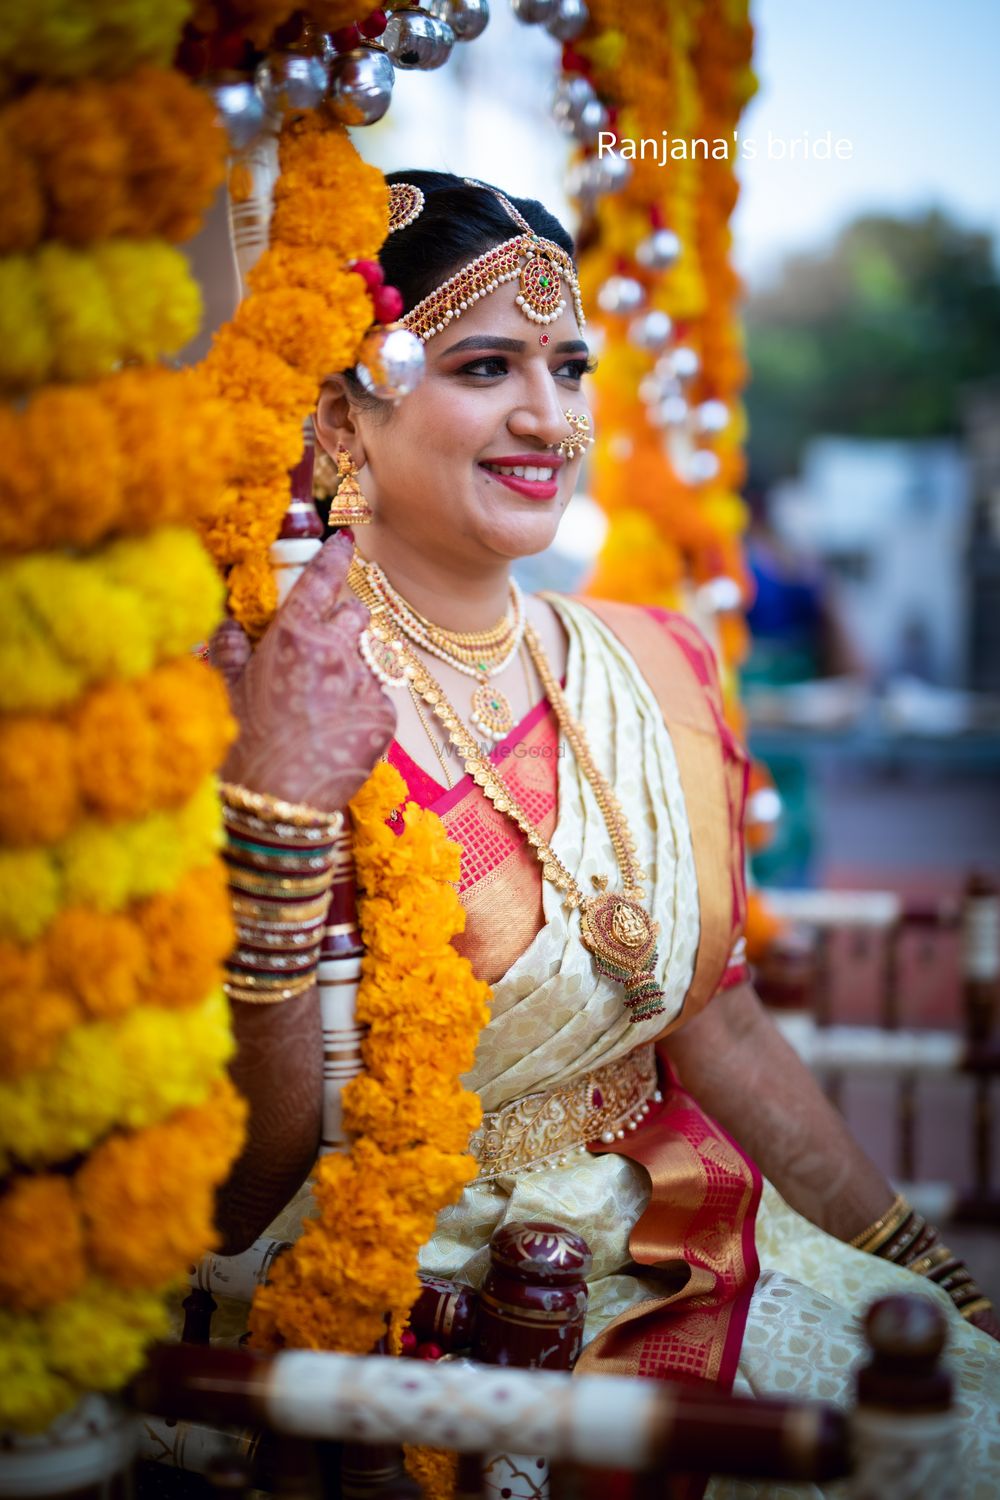 Photo From smriti's wedding - By Makeovers by Ranjana Venkatesh